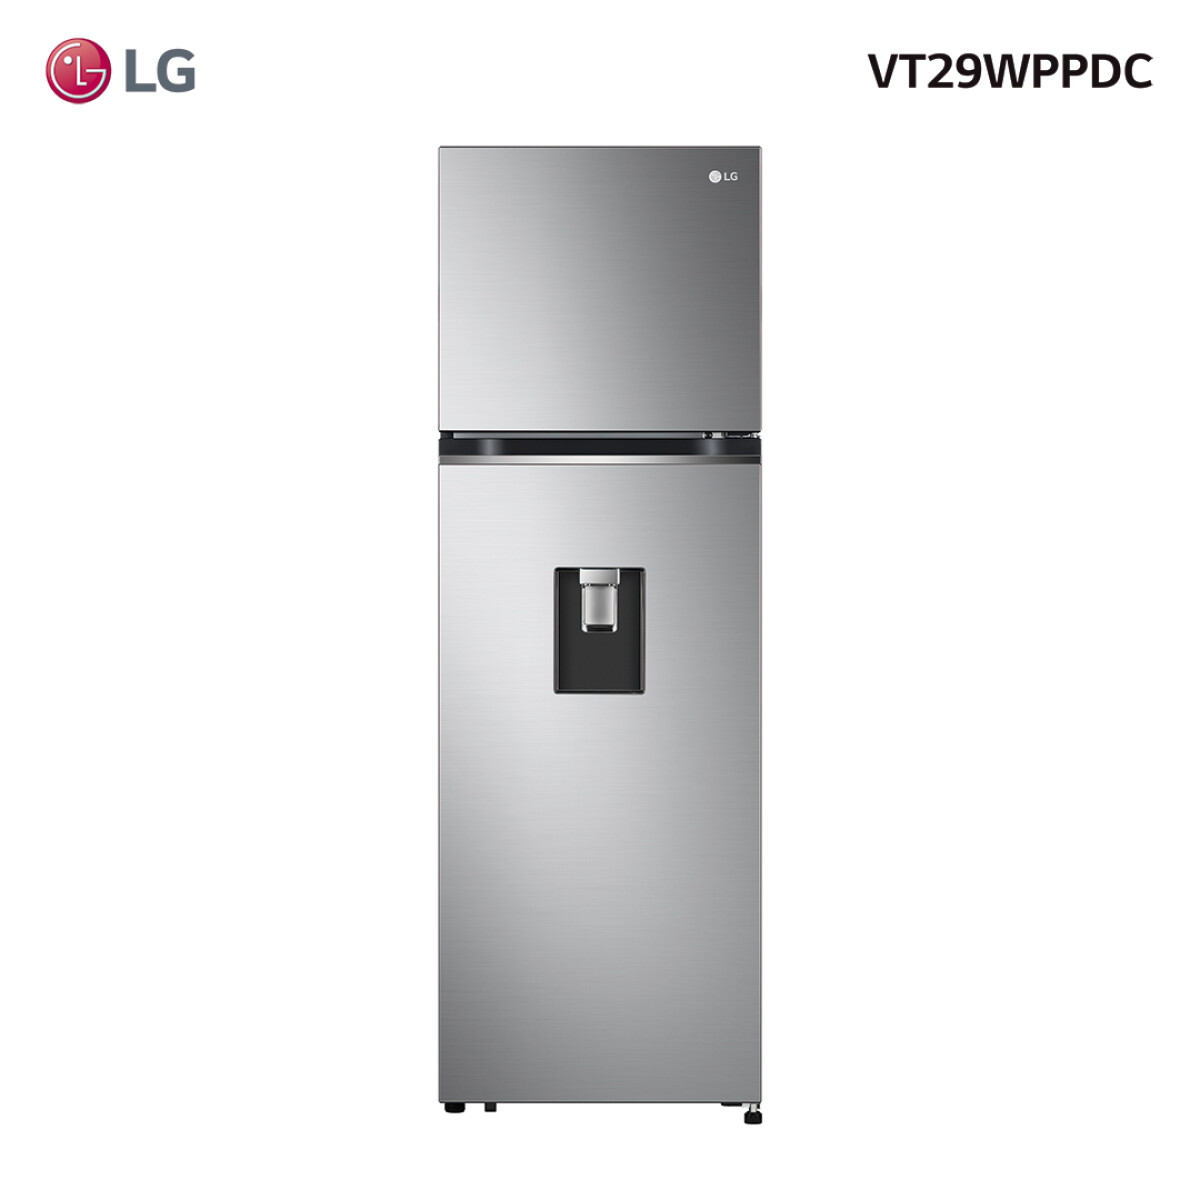 Refrigerador LG inverter 283L VT29WPPDC - 001 